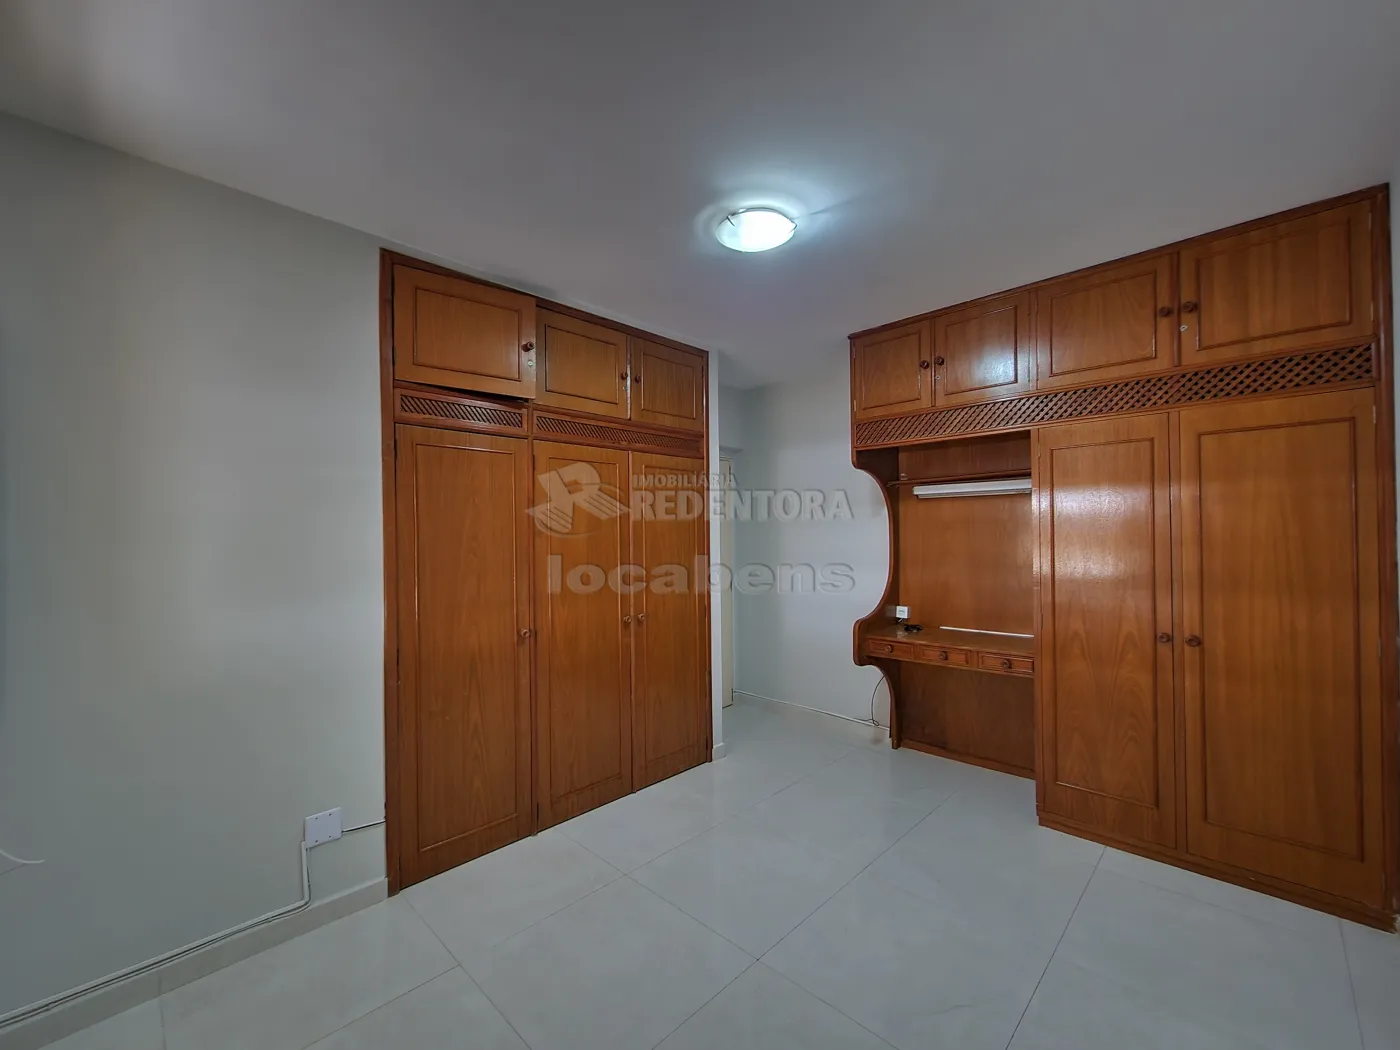 Alugar Apartamento / Padrão em São José do Rio Preto apenas R$ 1.400,00 - Foto 12